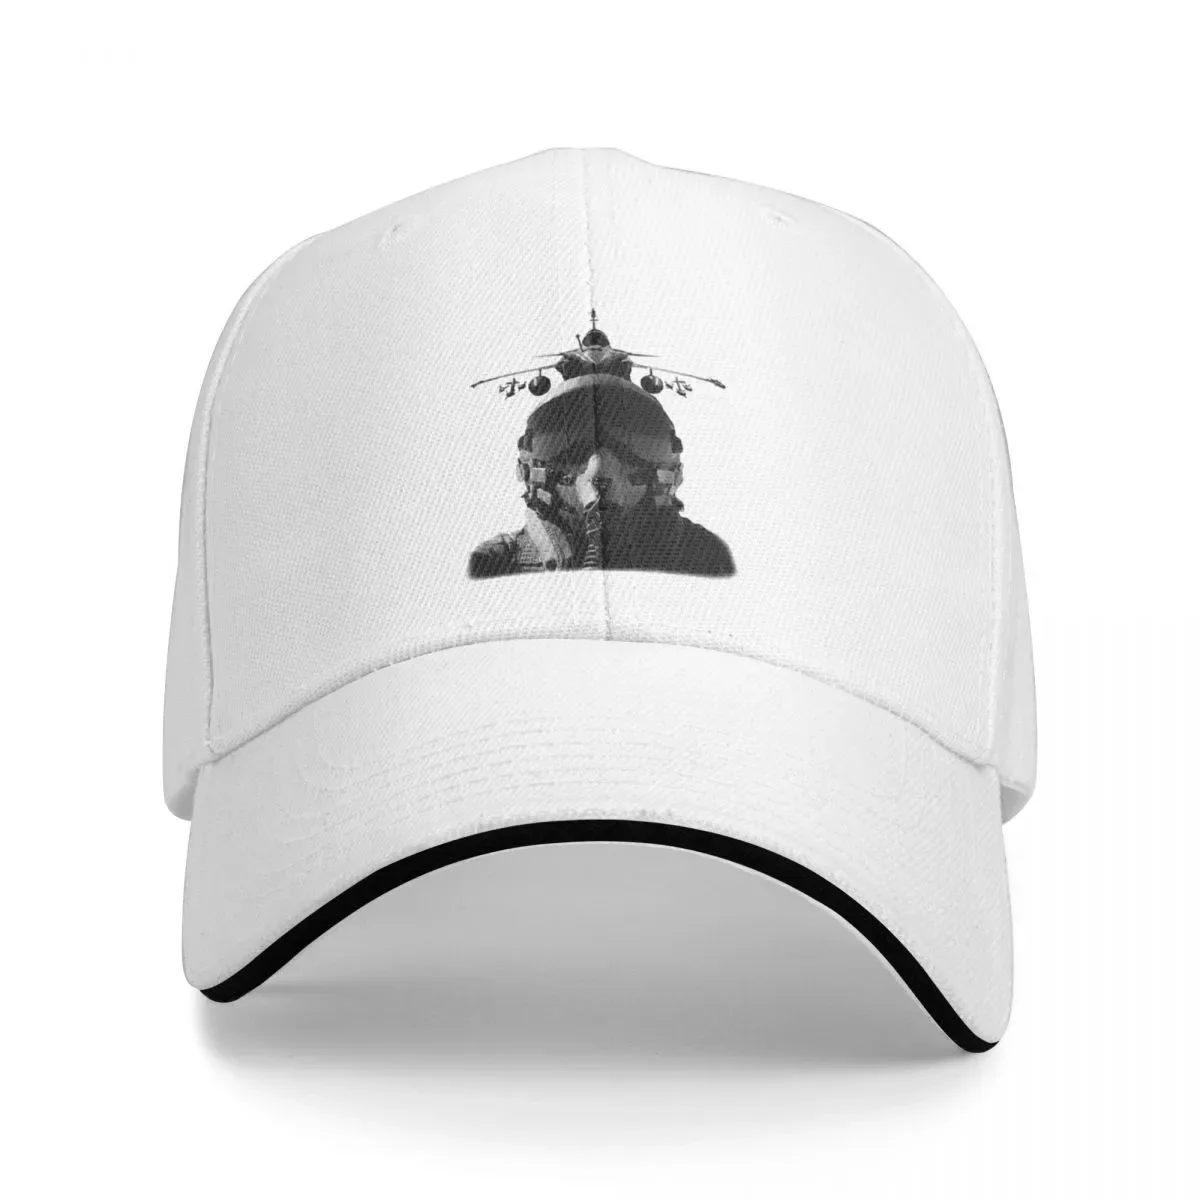 

New Born to be a Fighter Pilot Defense Fighter Jet AviationCap Baseball Cap Ball cap hats baseball cap hats woman Men's